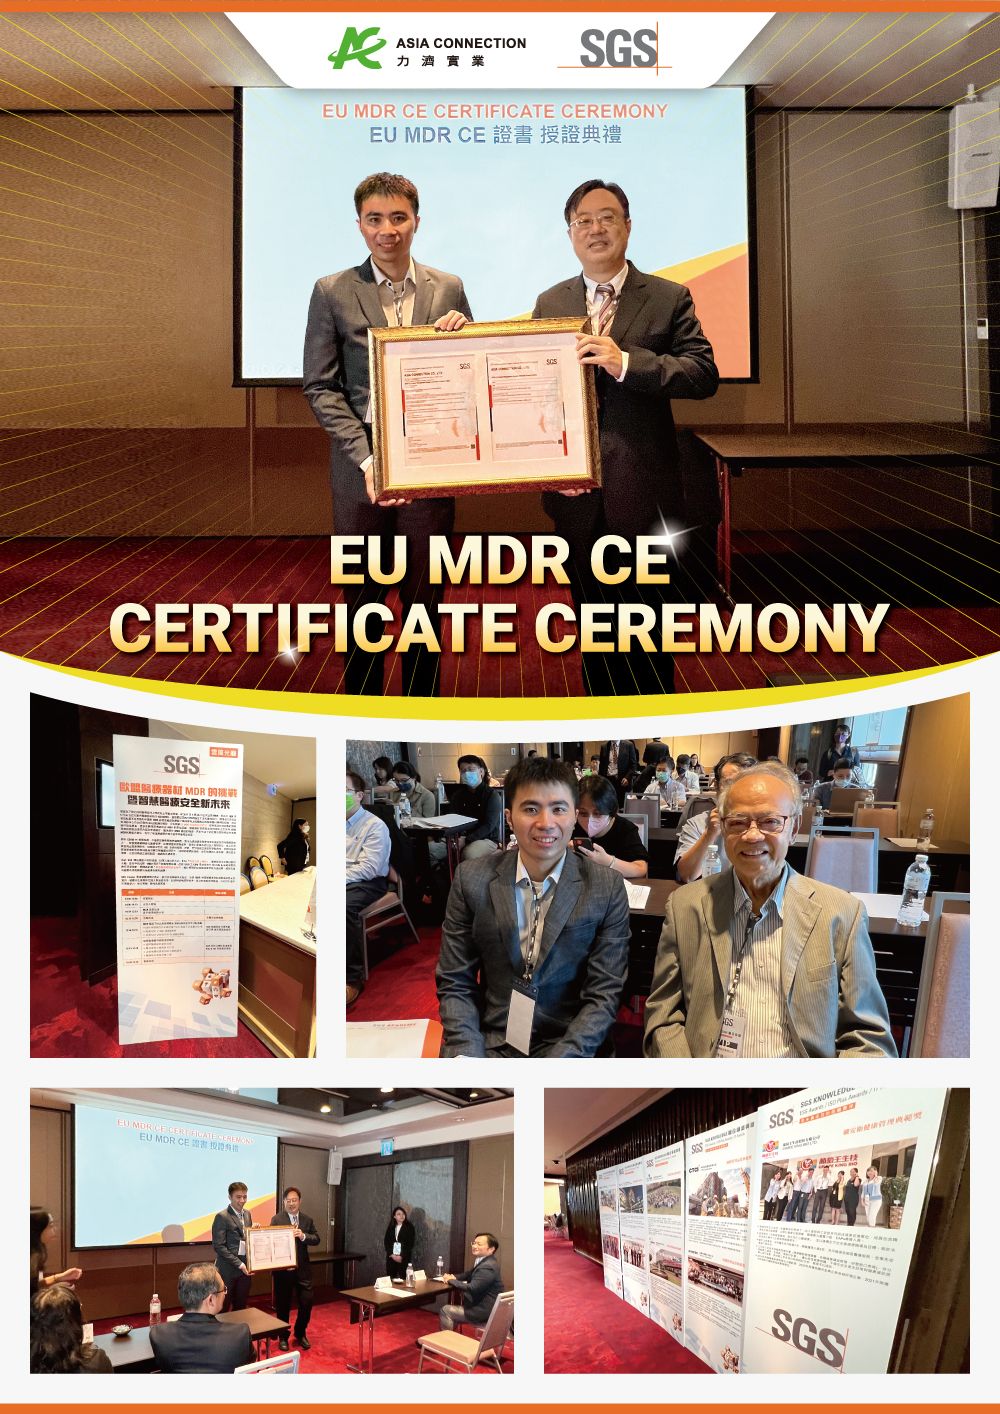 เครื่องดูดเสมหะทางจมูก ME8202X ของ 'Asia Connection' ได้รับการรับรอง CE ตามระเบียบกฎหมายอุปกรณ์การแพทย์ (MDR) ของสหภาพยุโรป 2017/745